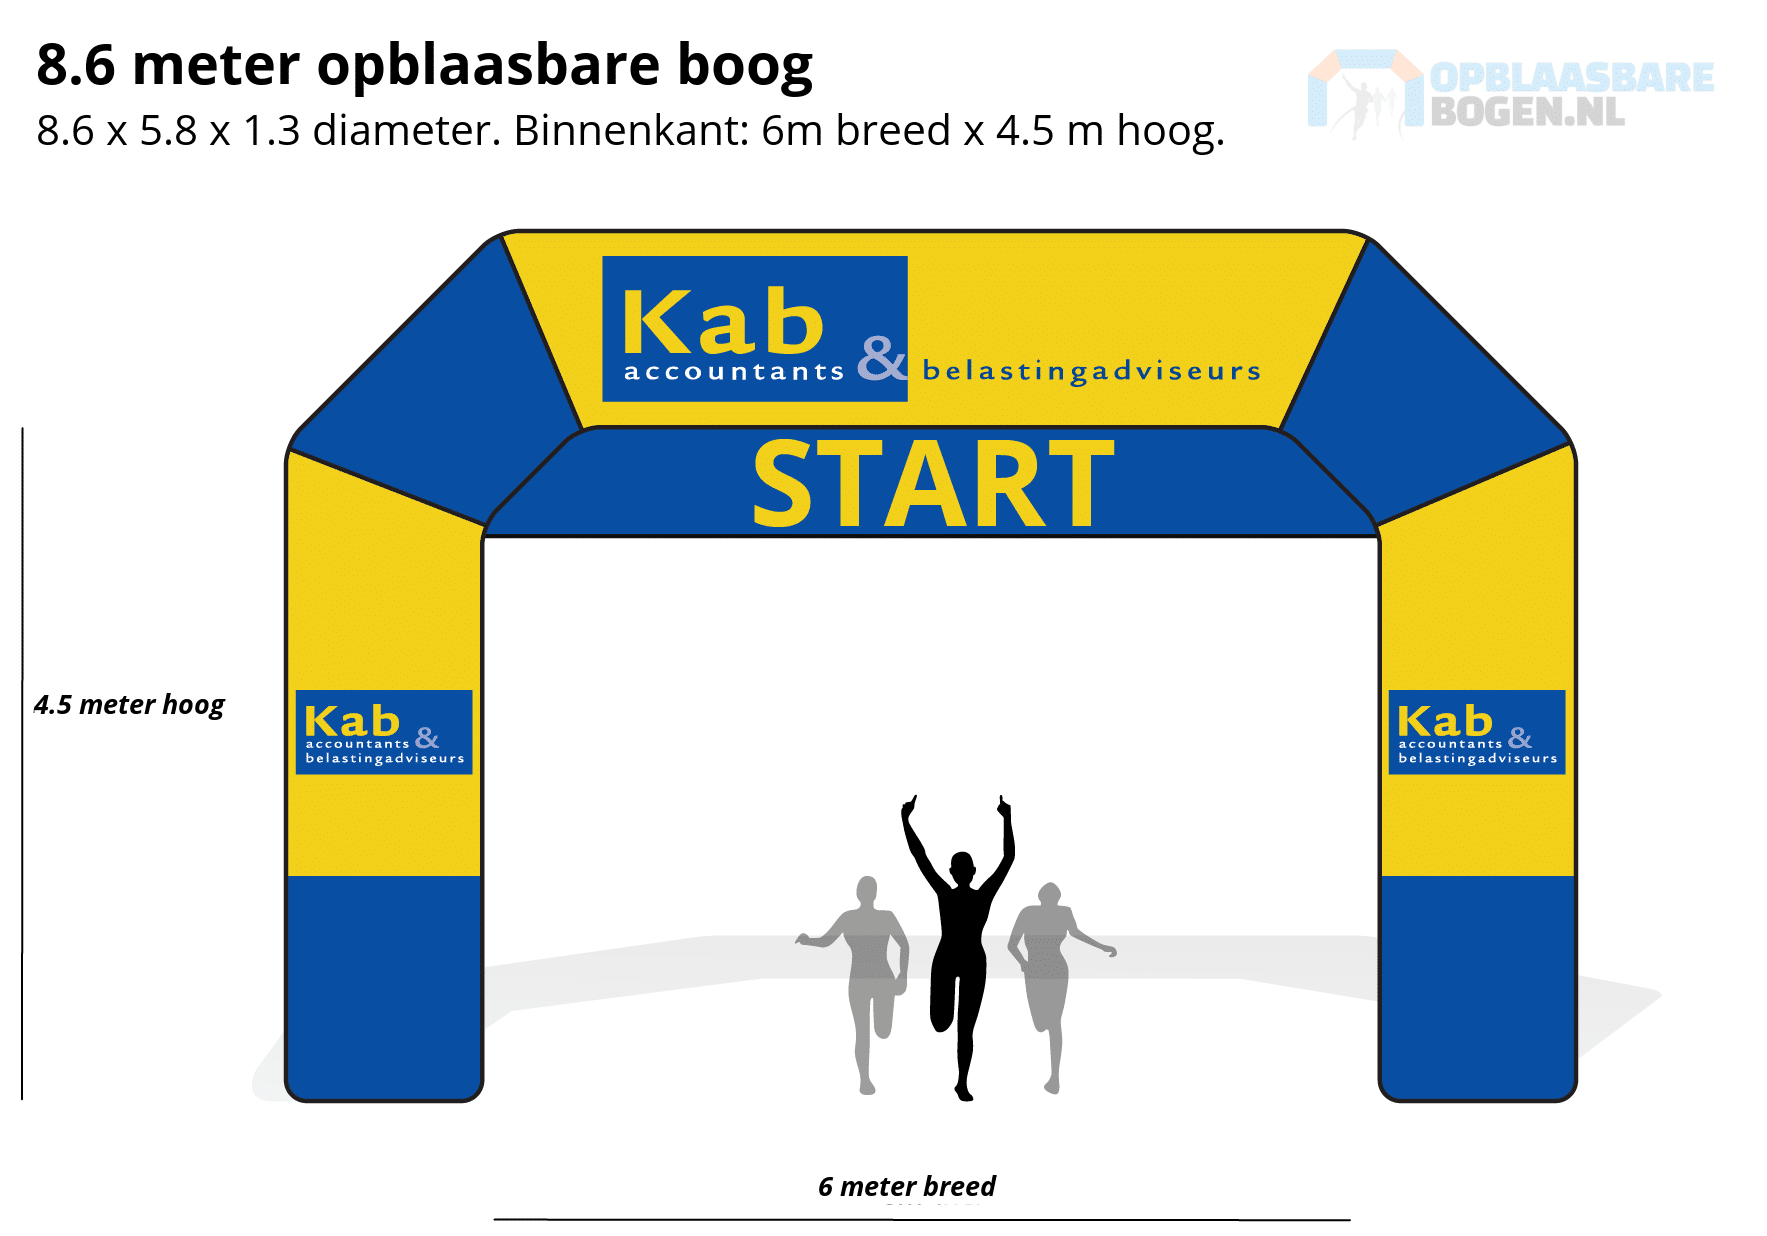 Ontwerp 8.6 meter Opblaasbare boog voor Kab Accountants -Opblaasbarebogen.nl-